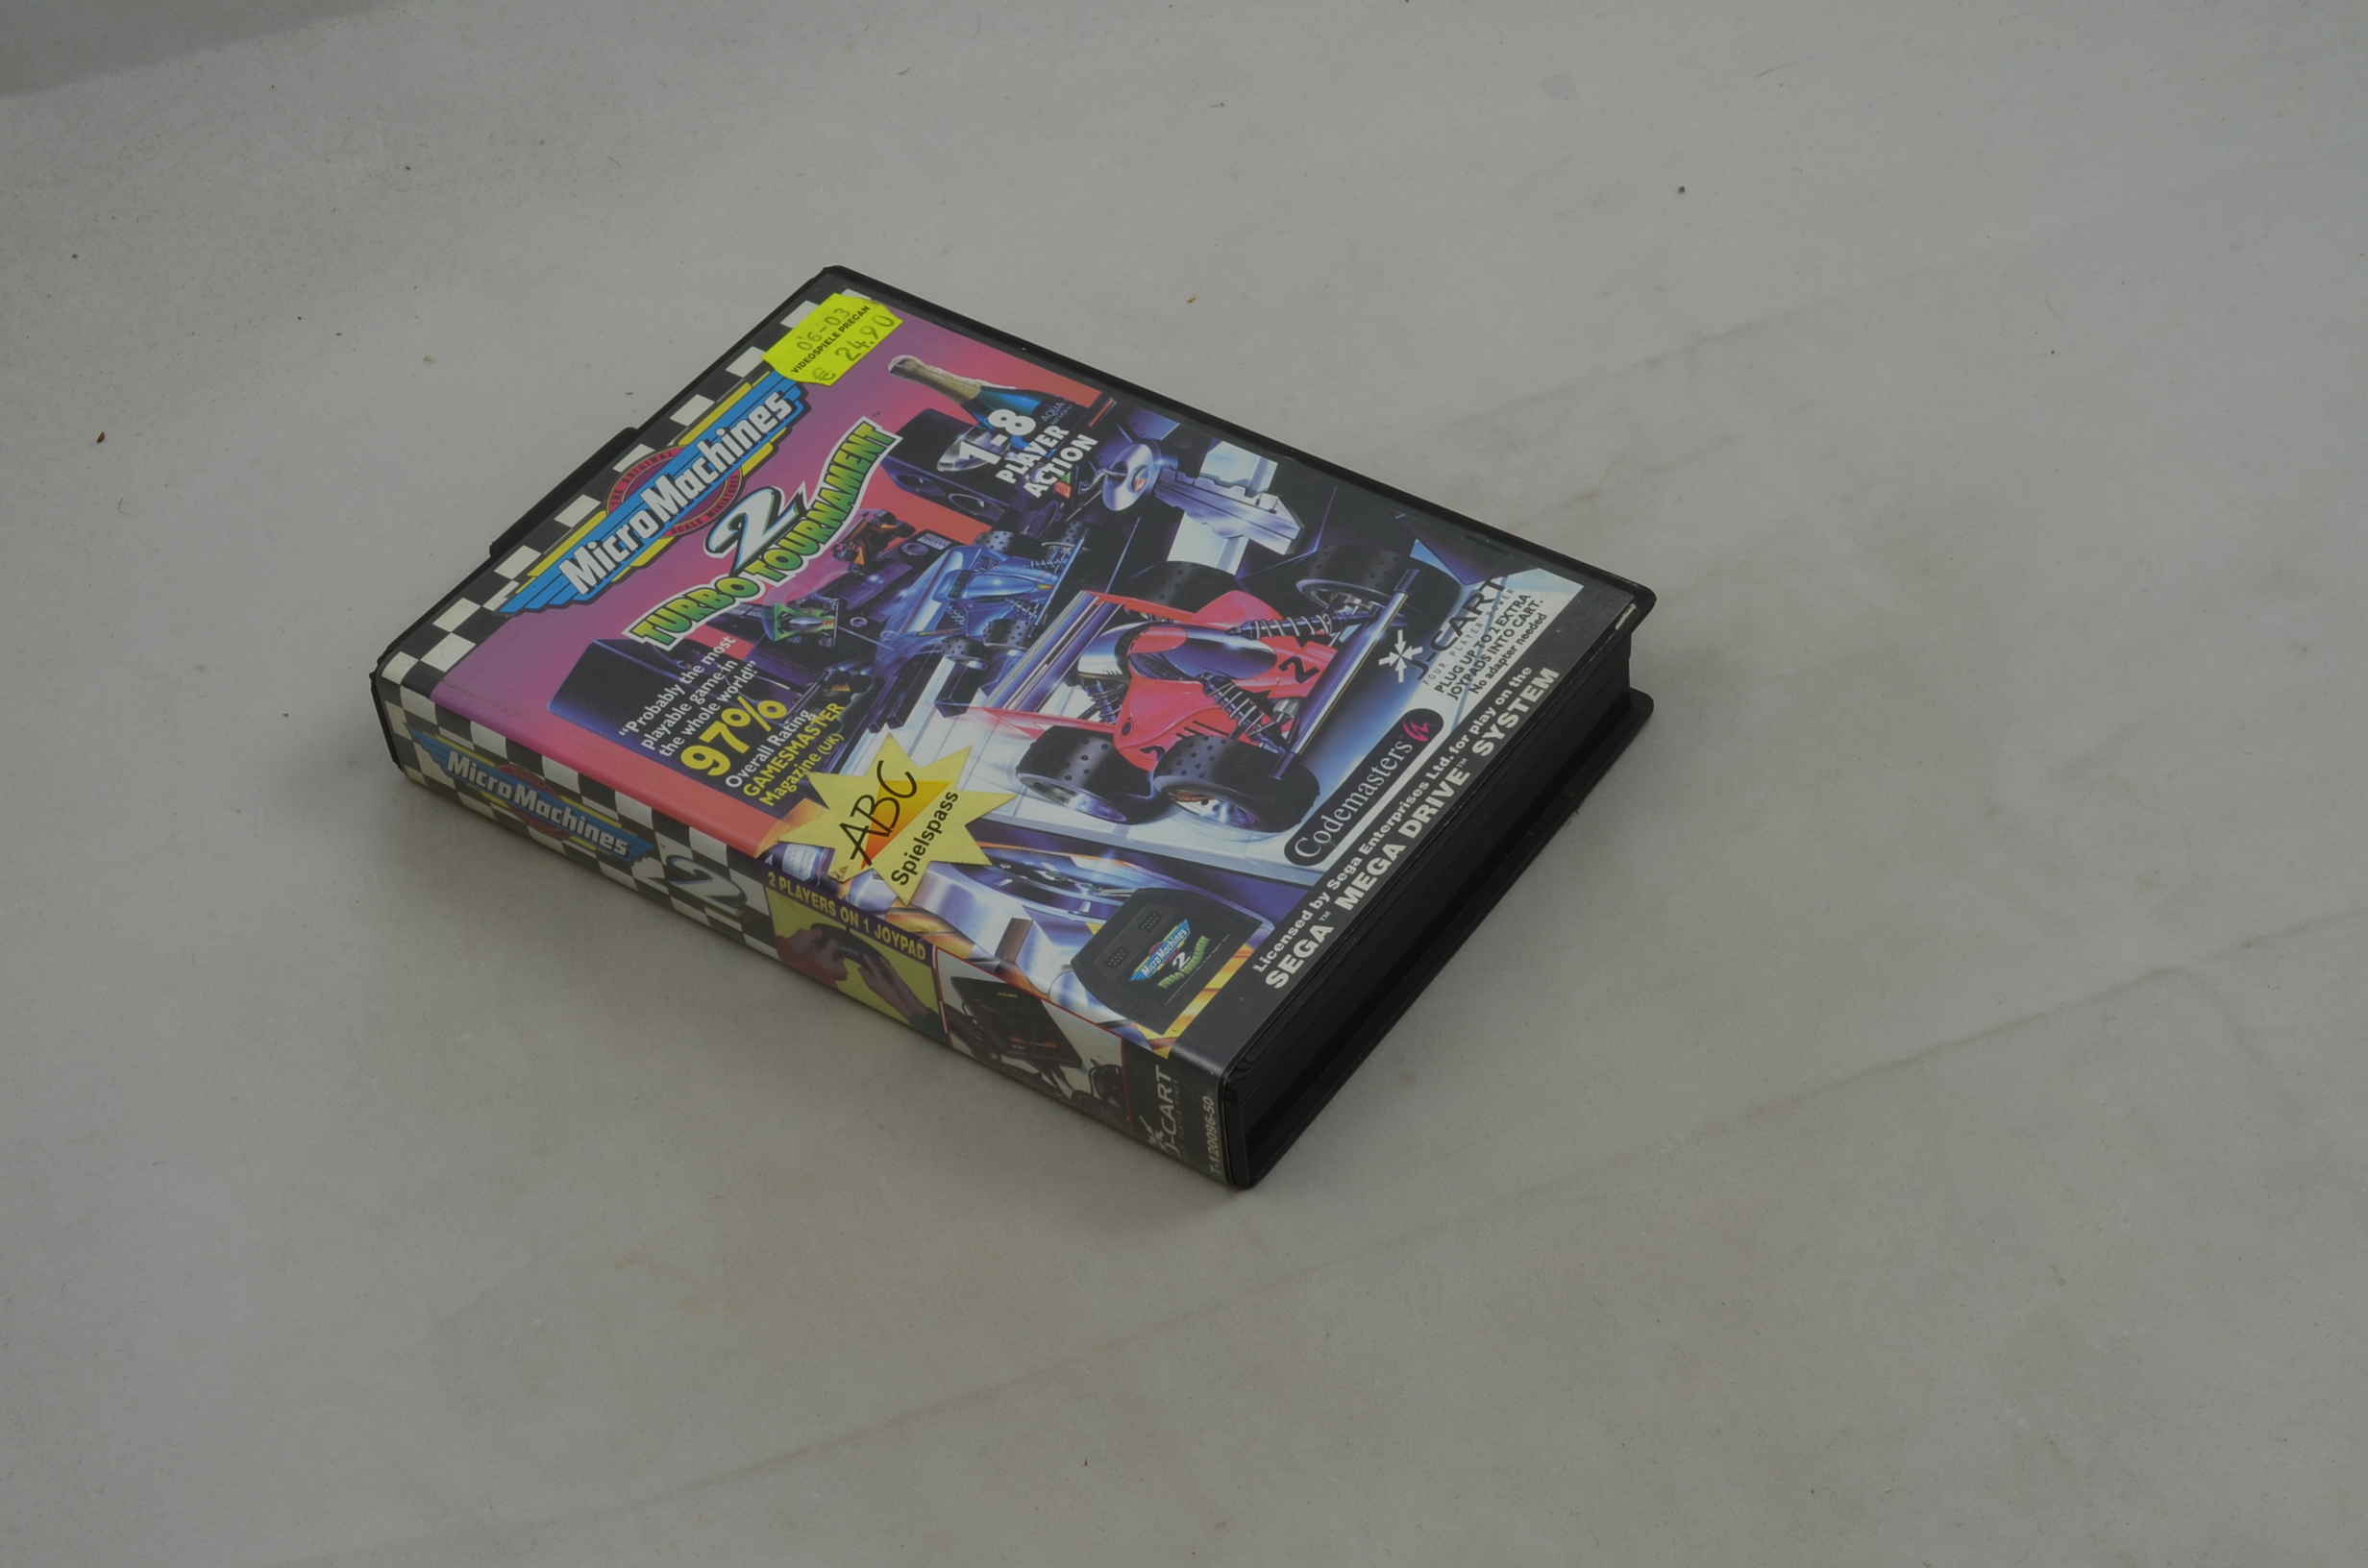 Produktbild von Micro Machines 2: Turbo Tournament Sega Mega Drive Spiel CIB (gut)